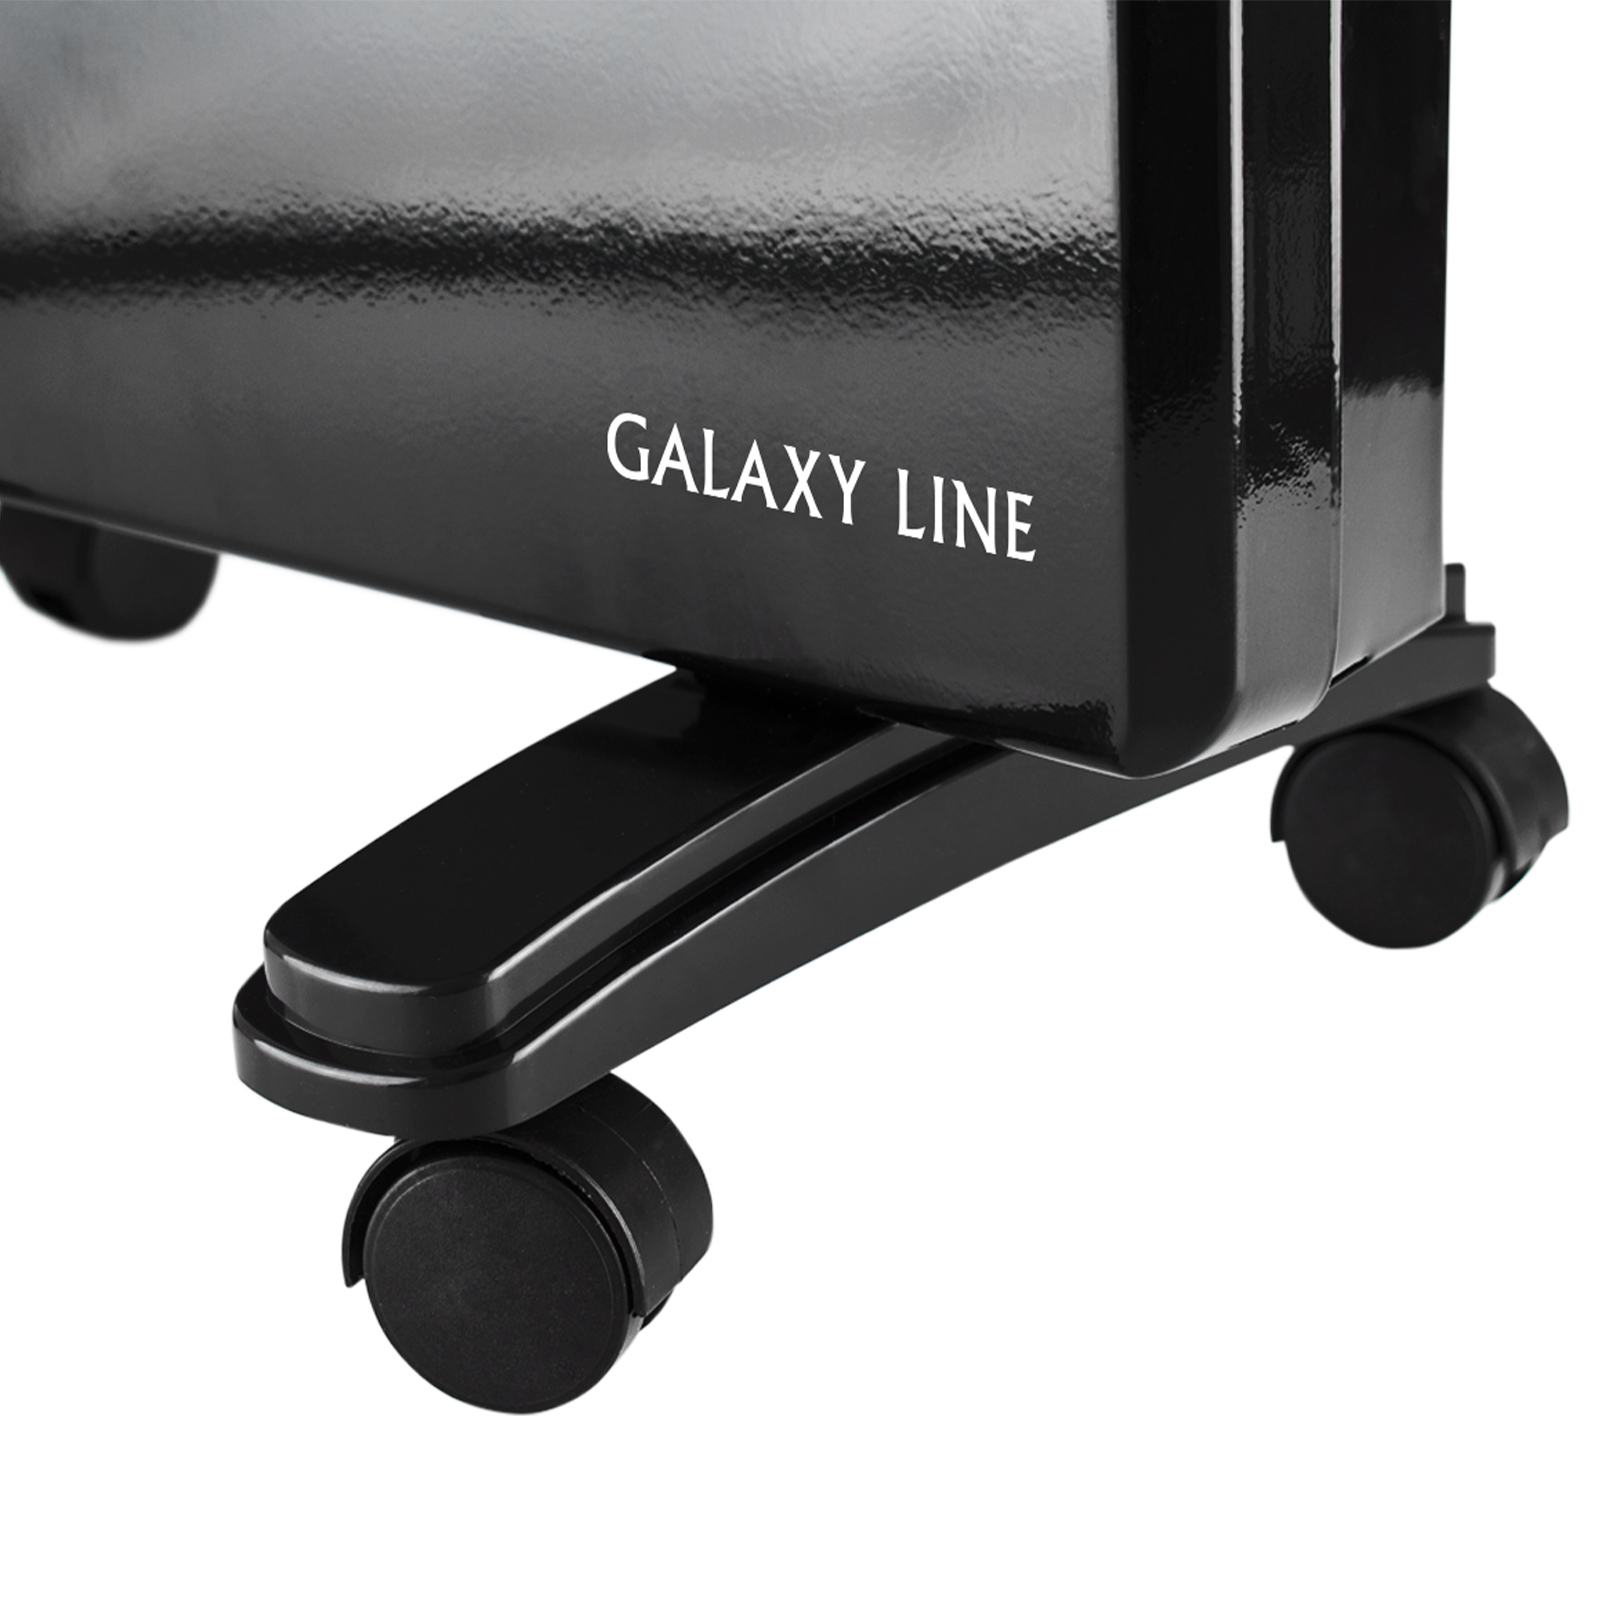 Конвектор Galaxy Line GL8228 ЧЕРНЫЙ